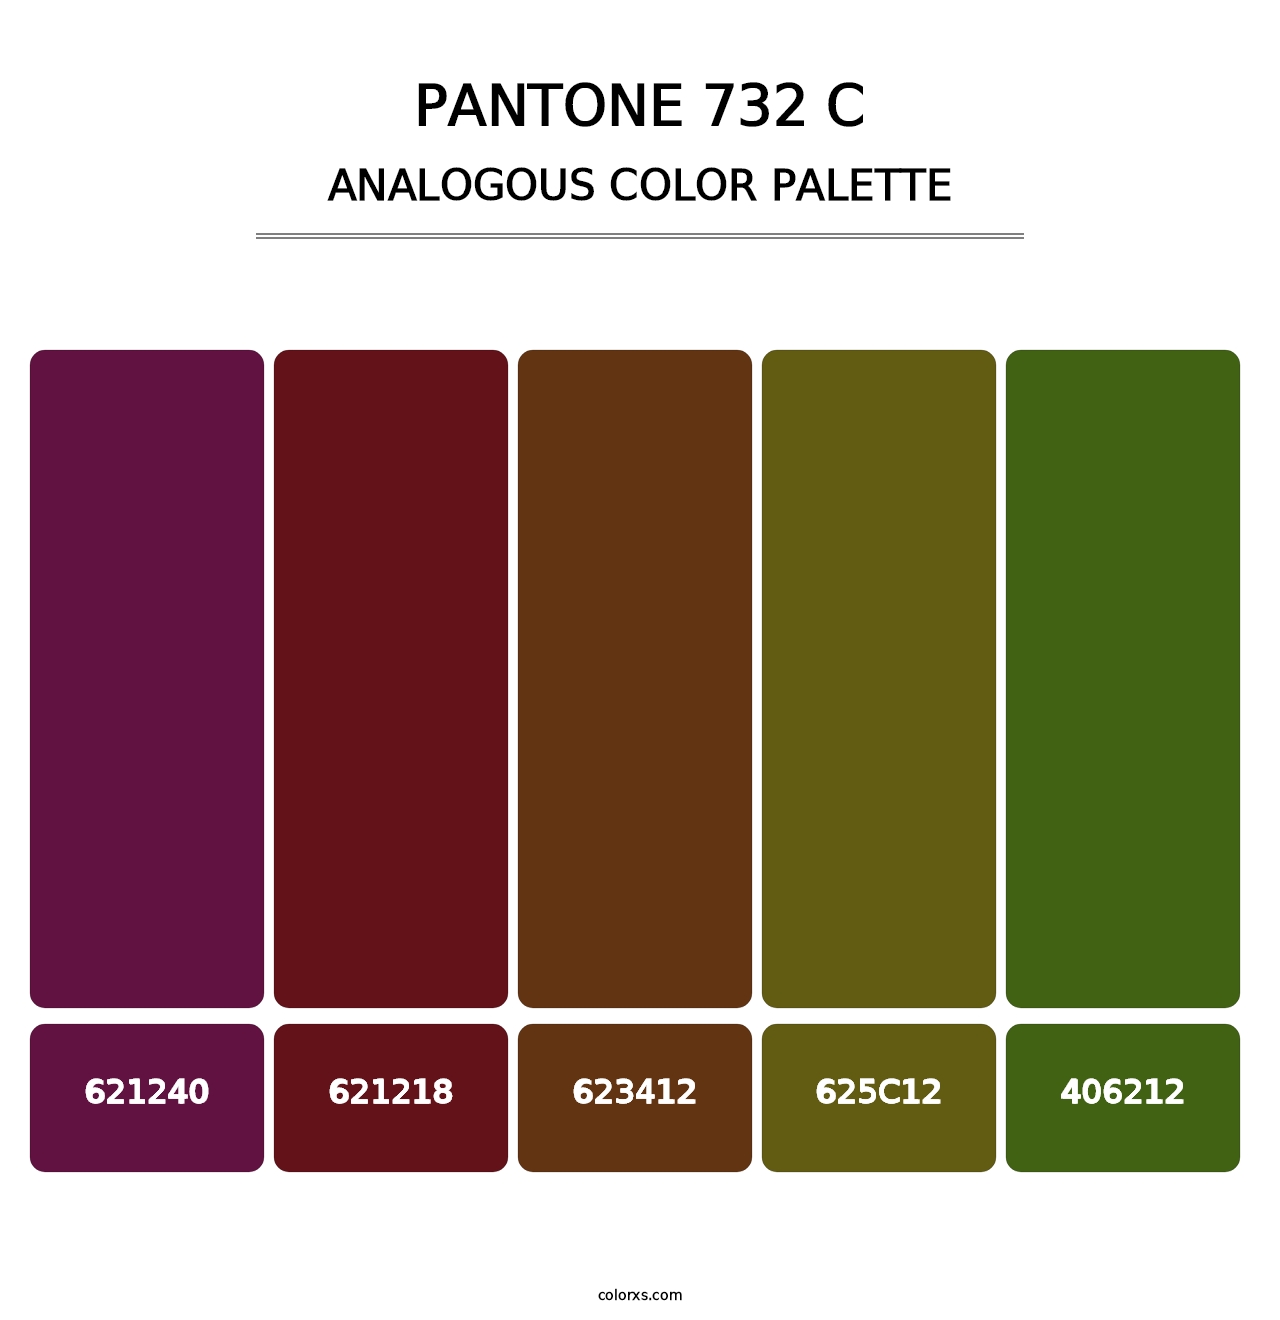 PANTONE 732 C - Analogous Color Palette